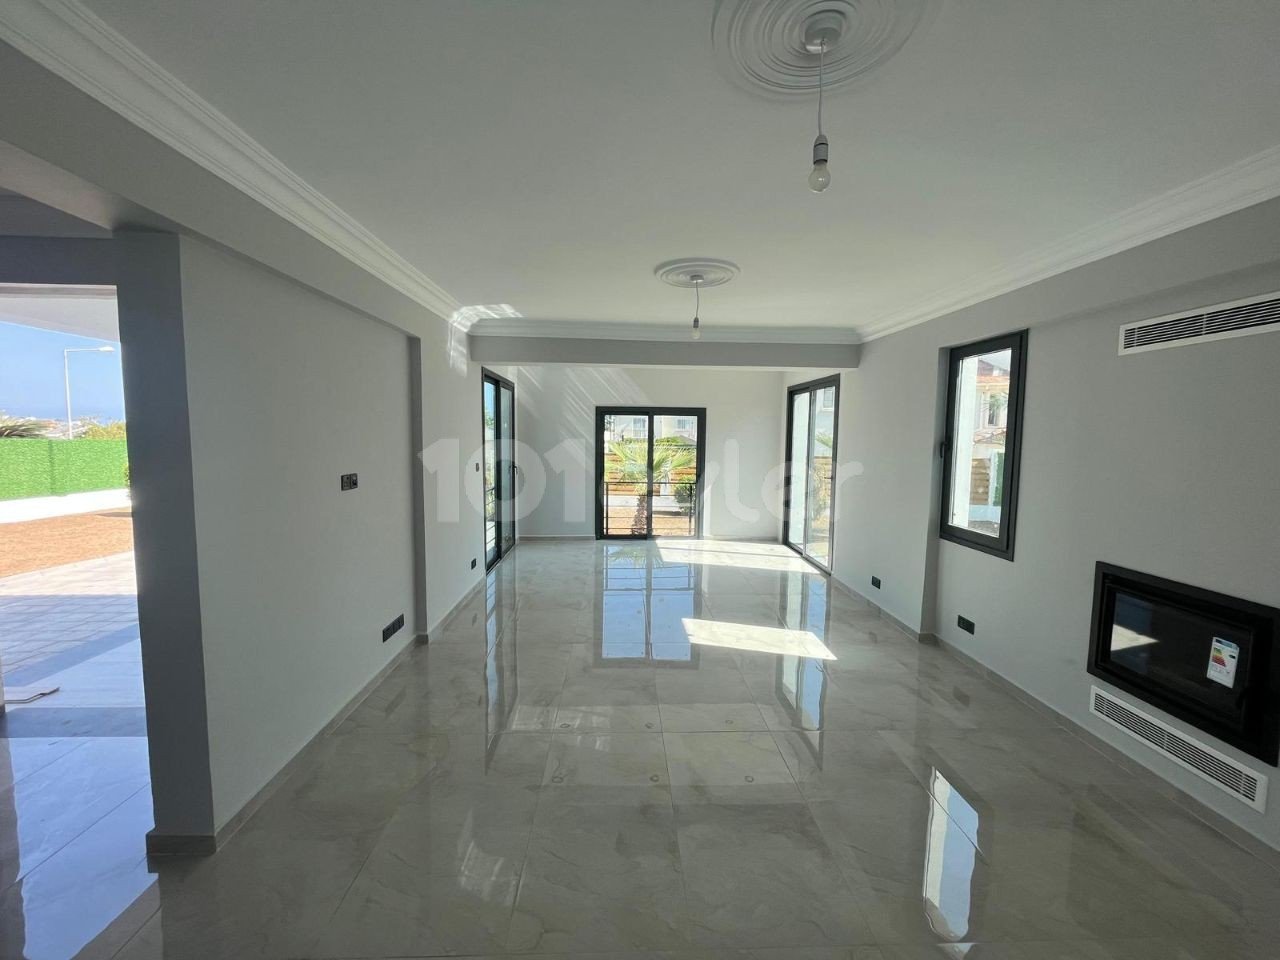 Satılık Villa - Bellapais, Girne, Kuzey Kıbrıs-47f478da-d269-407e-bde3-13dd68d58638